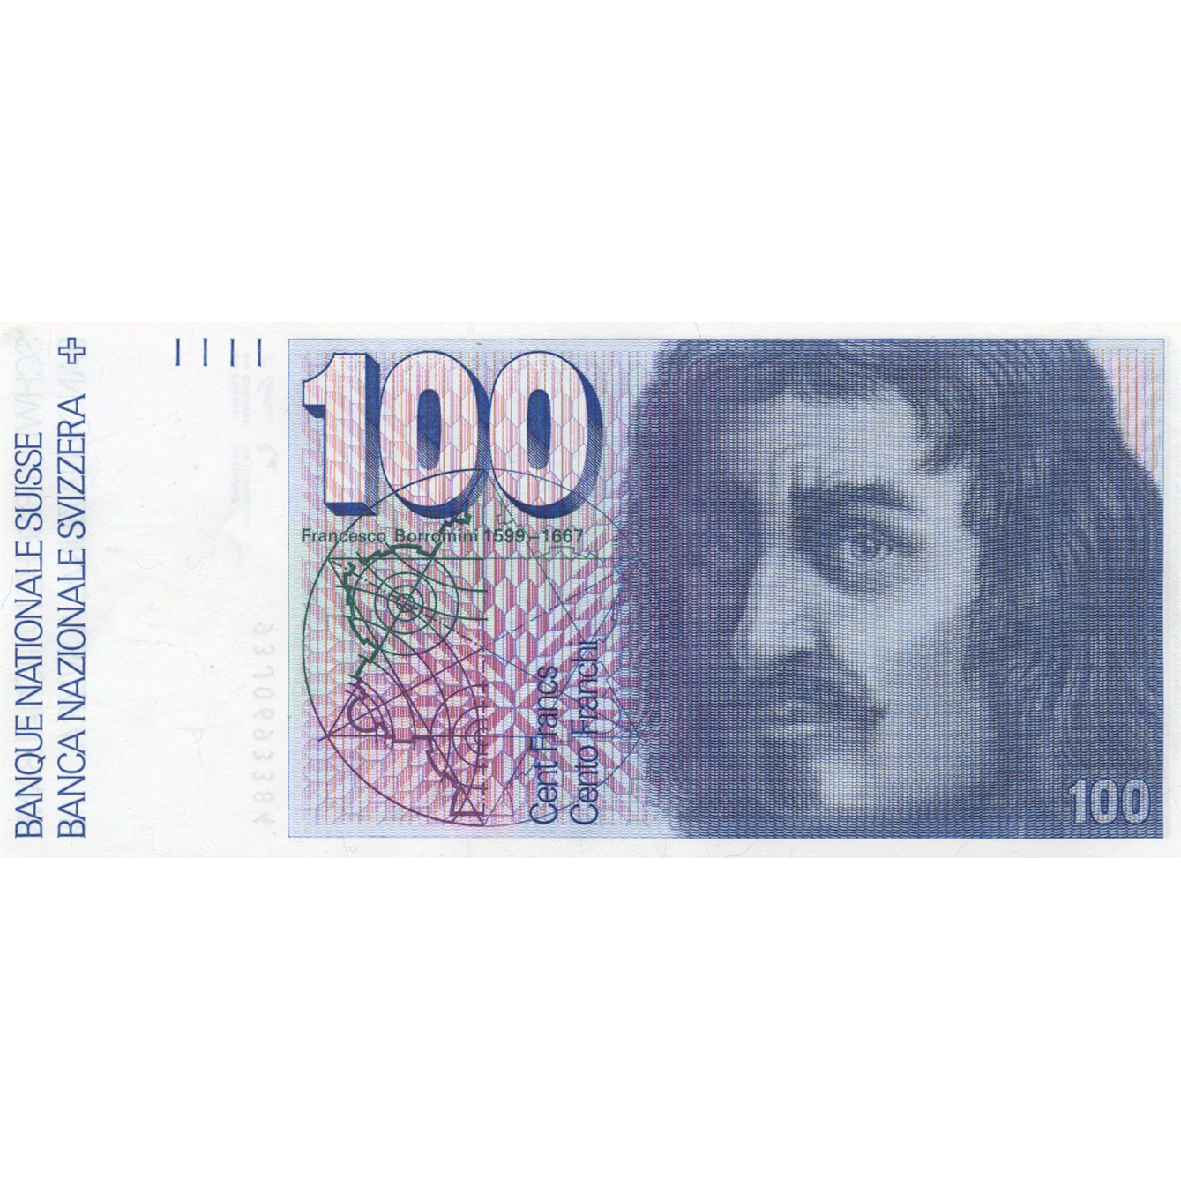 Schweizerische Eidgenossenschaft, 100 Franken (6. Banknotenserie, in Kurs 1976-2000) (obverse)